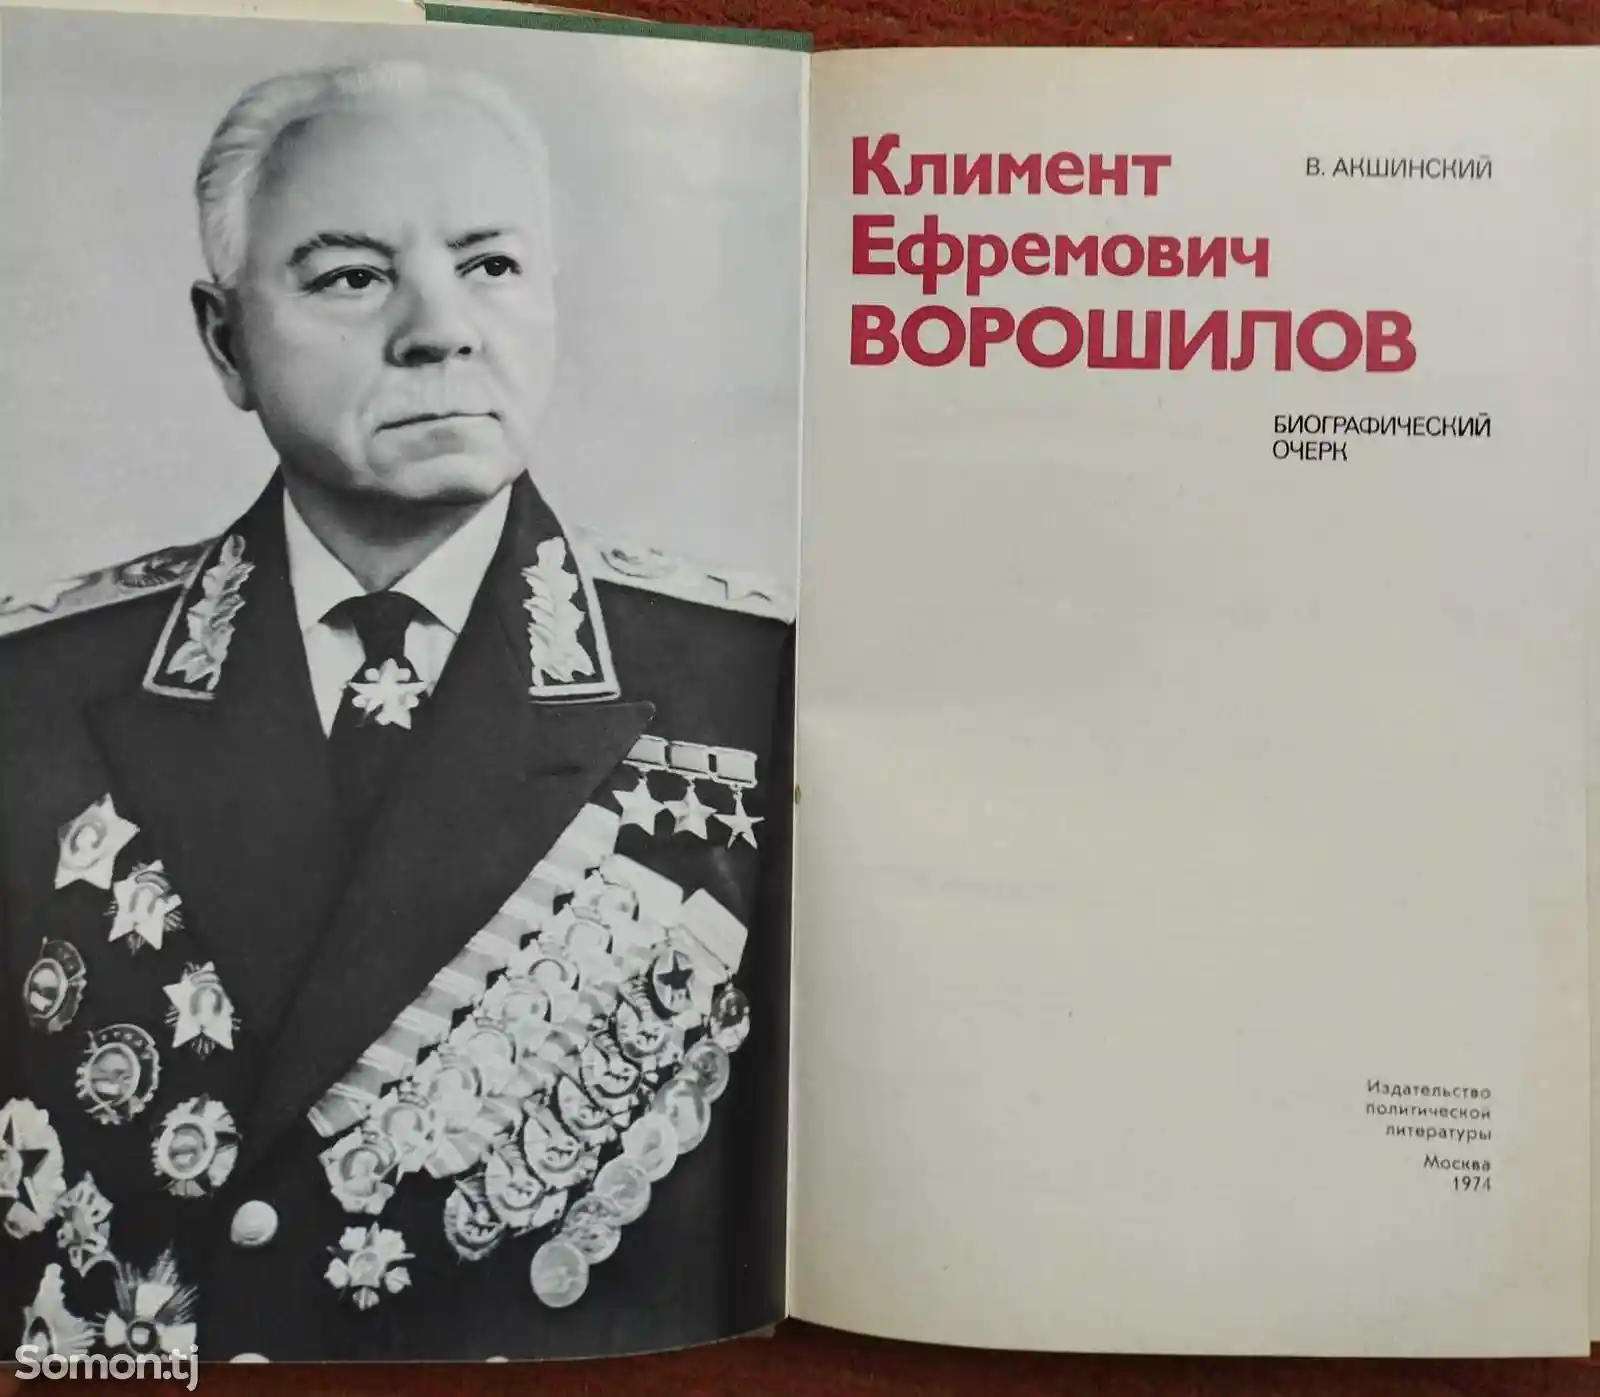 Книга Климент Ефремович Ворошилов-2